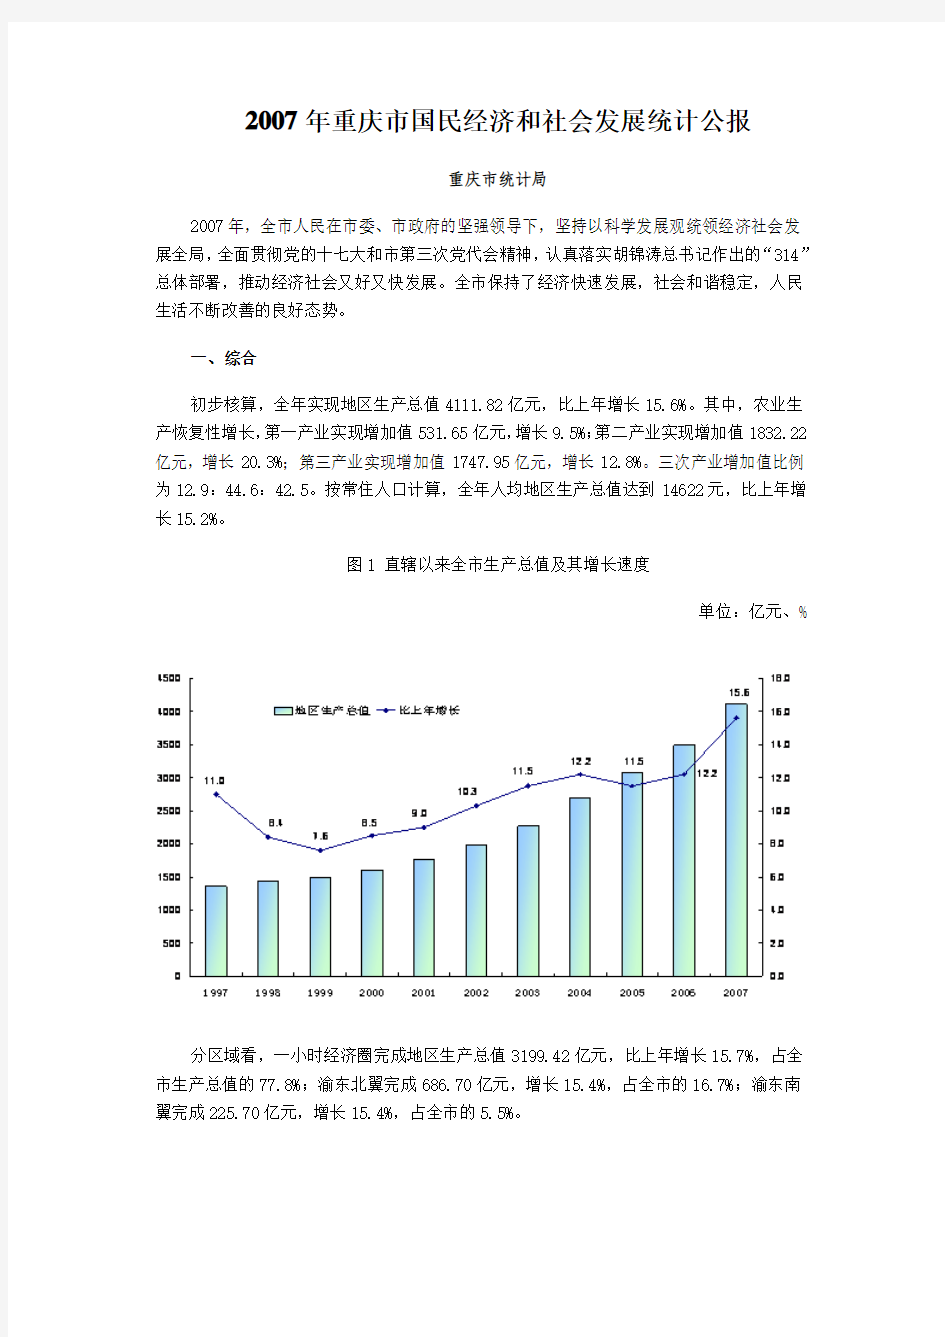 2007年重庆市国民经济和社会发展统计公报